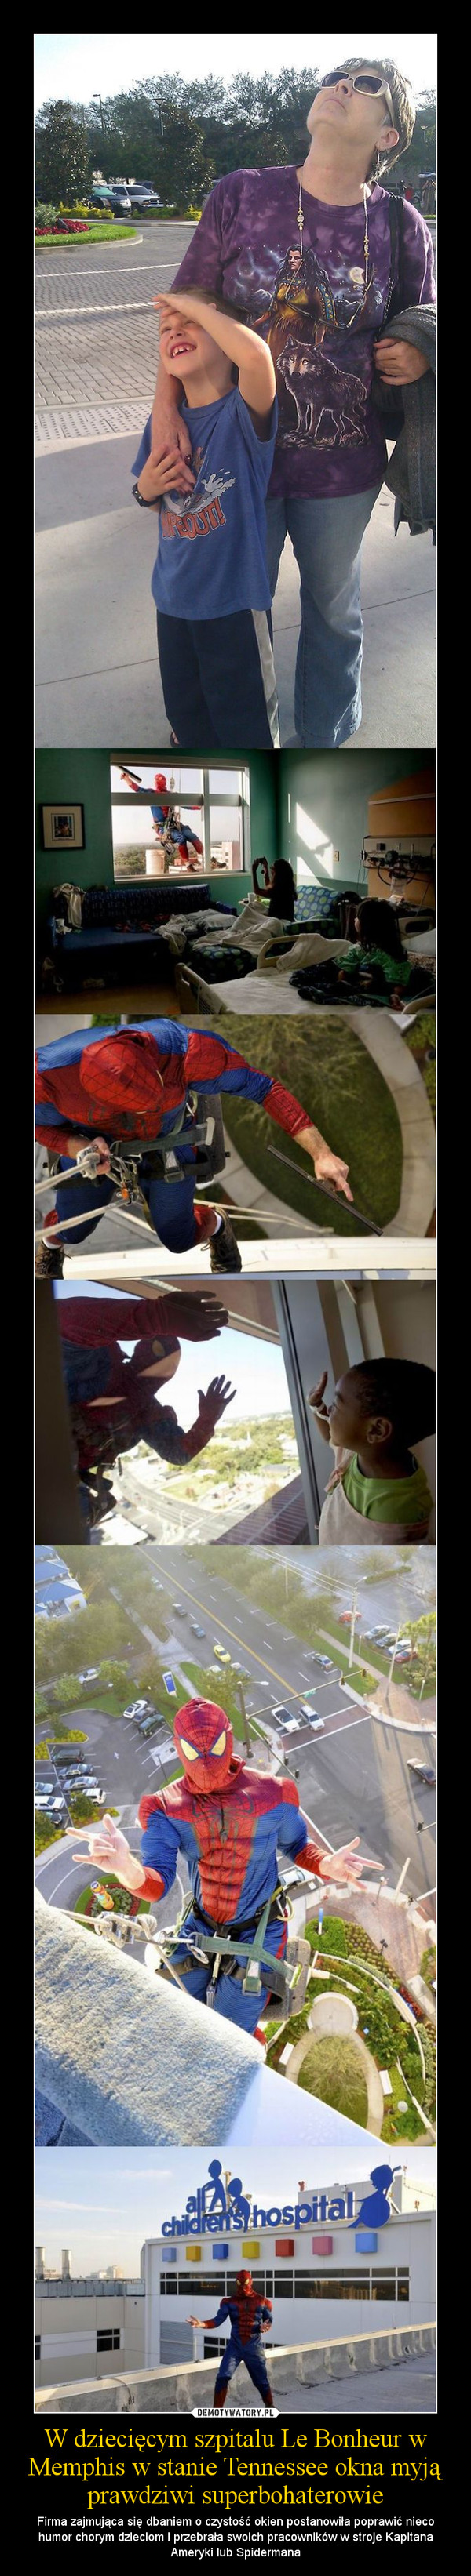 W dziecięcym szpitalu Le Bonheur w Memphis w stanie Tennessee okna myją prawdziwi superbohaterowie